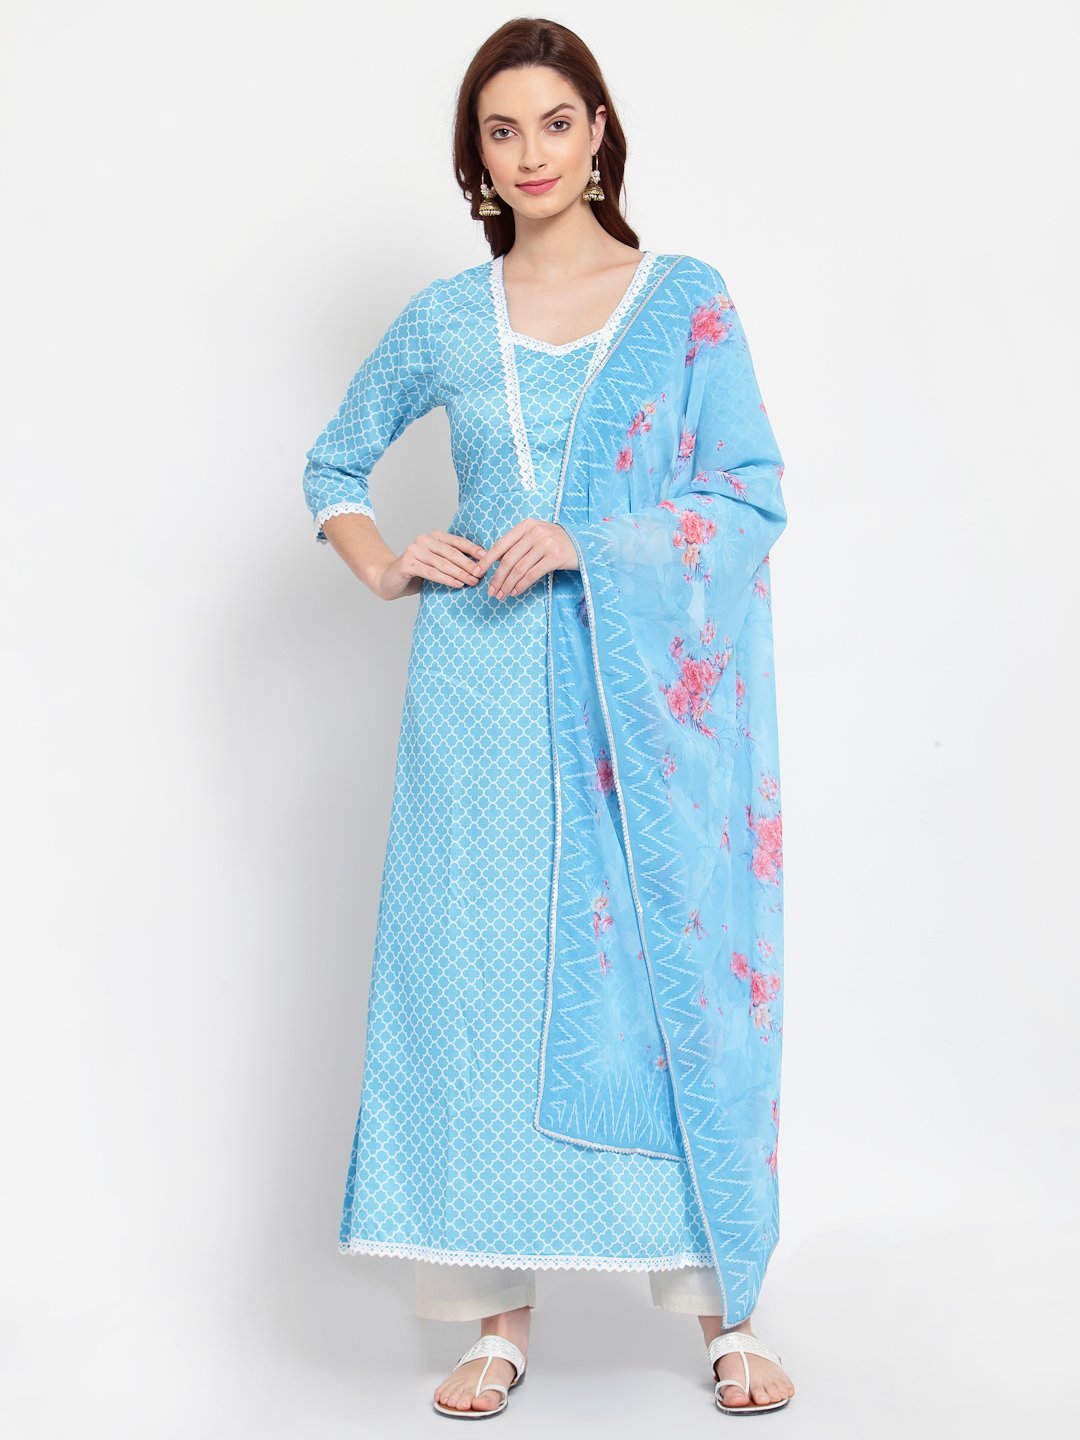 Women's Blue Printed Cotton Blend 3/4 Sleeve Square Neck Casual Anarkali Kurta Dupatta Set - Myshka